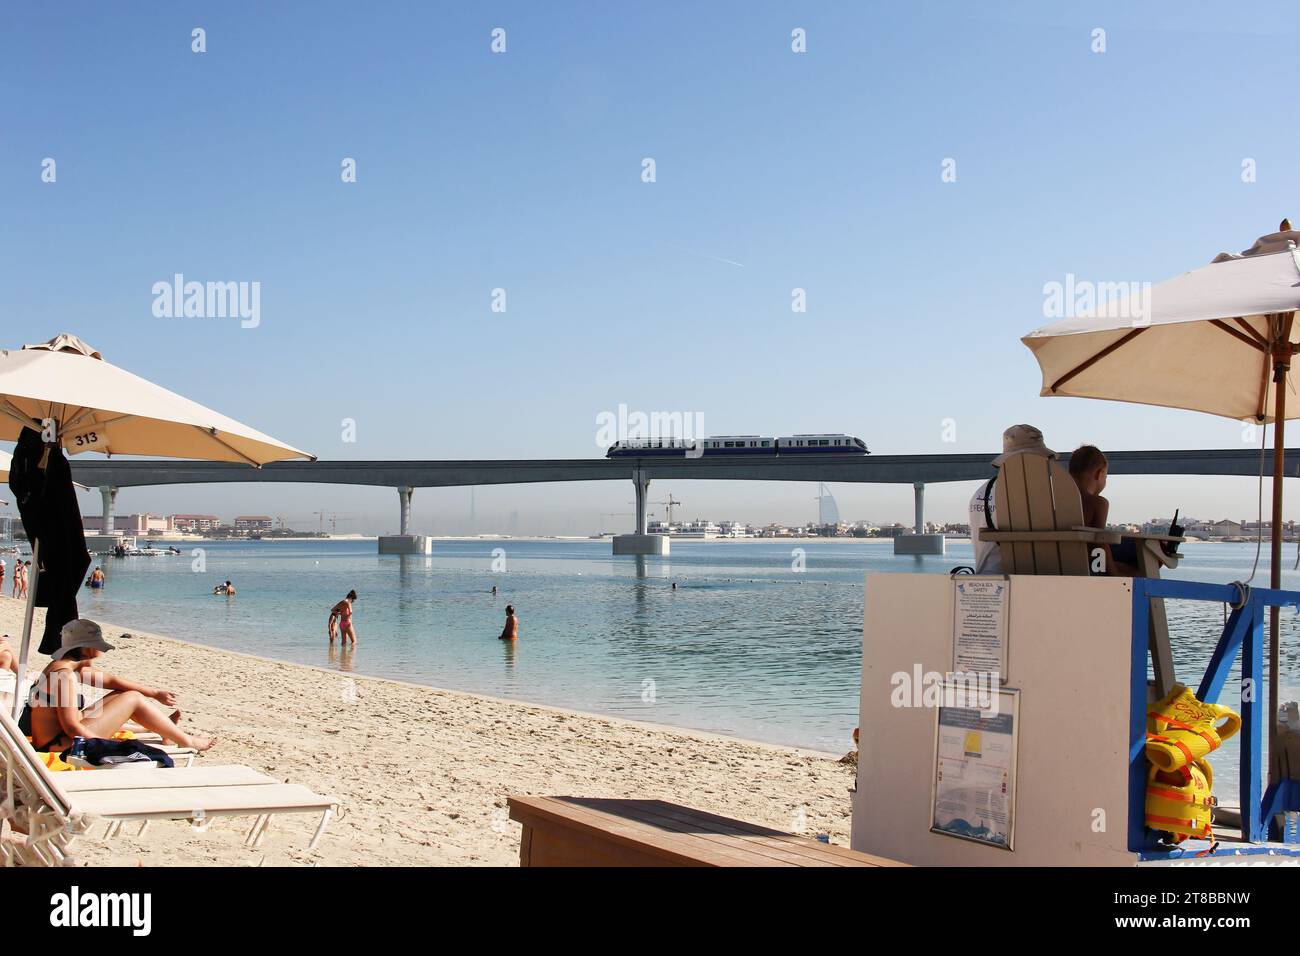 les gens apprécient la plage de la mer d'arabie à abu dhabi Banque D'Images